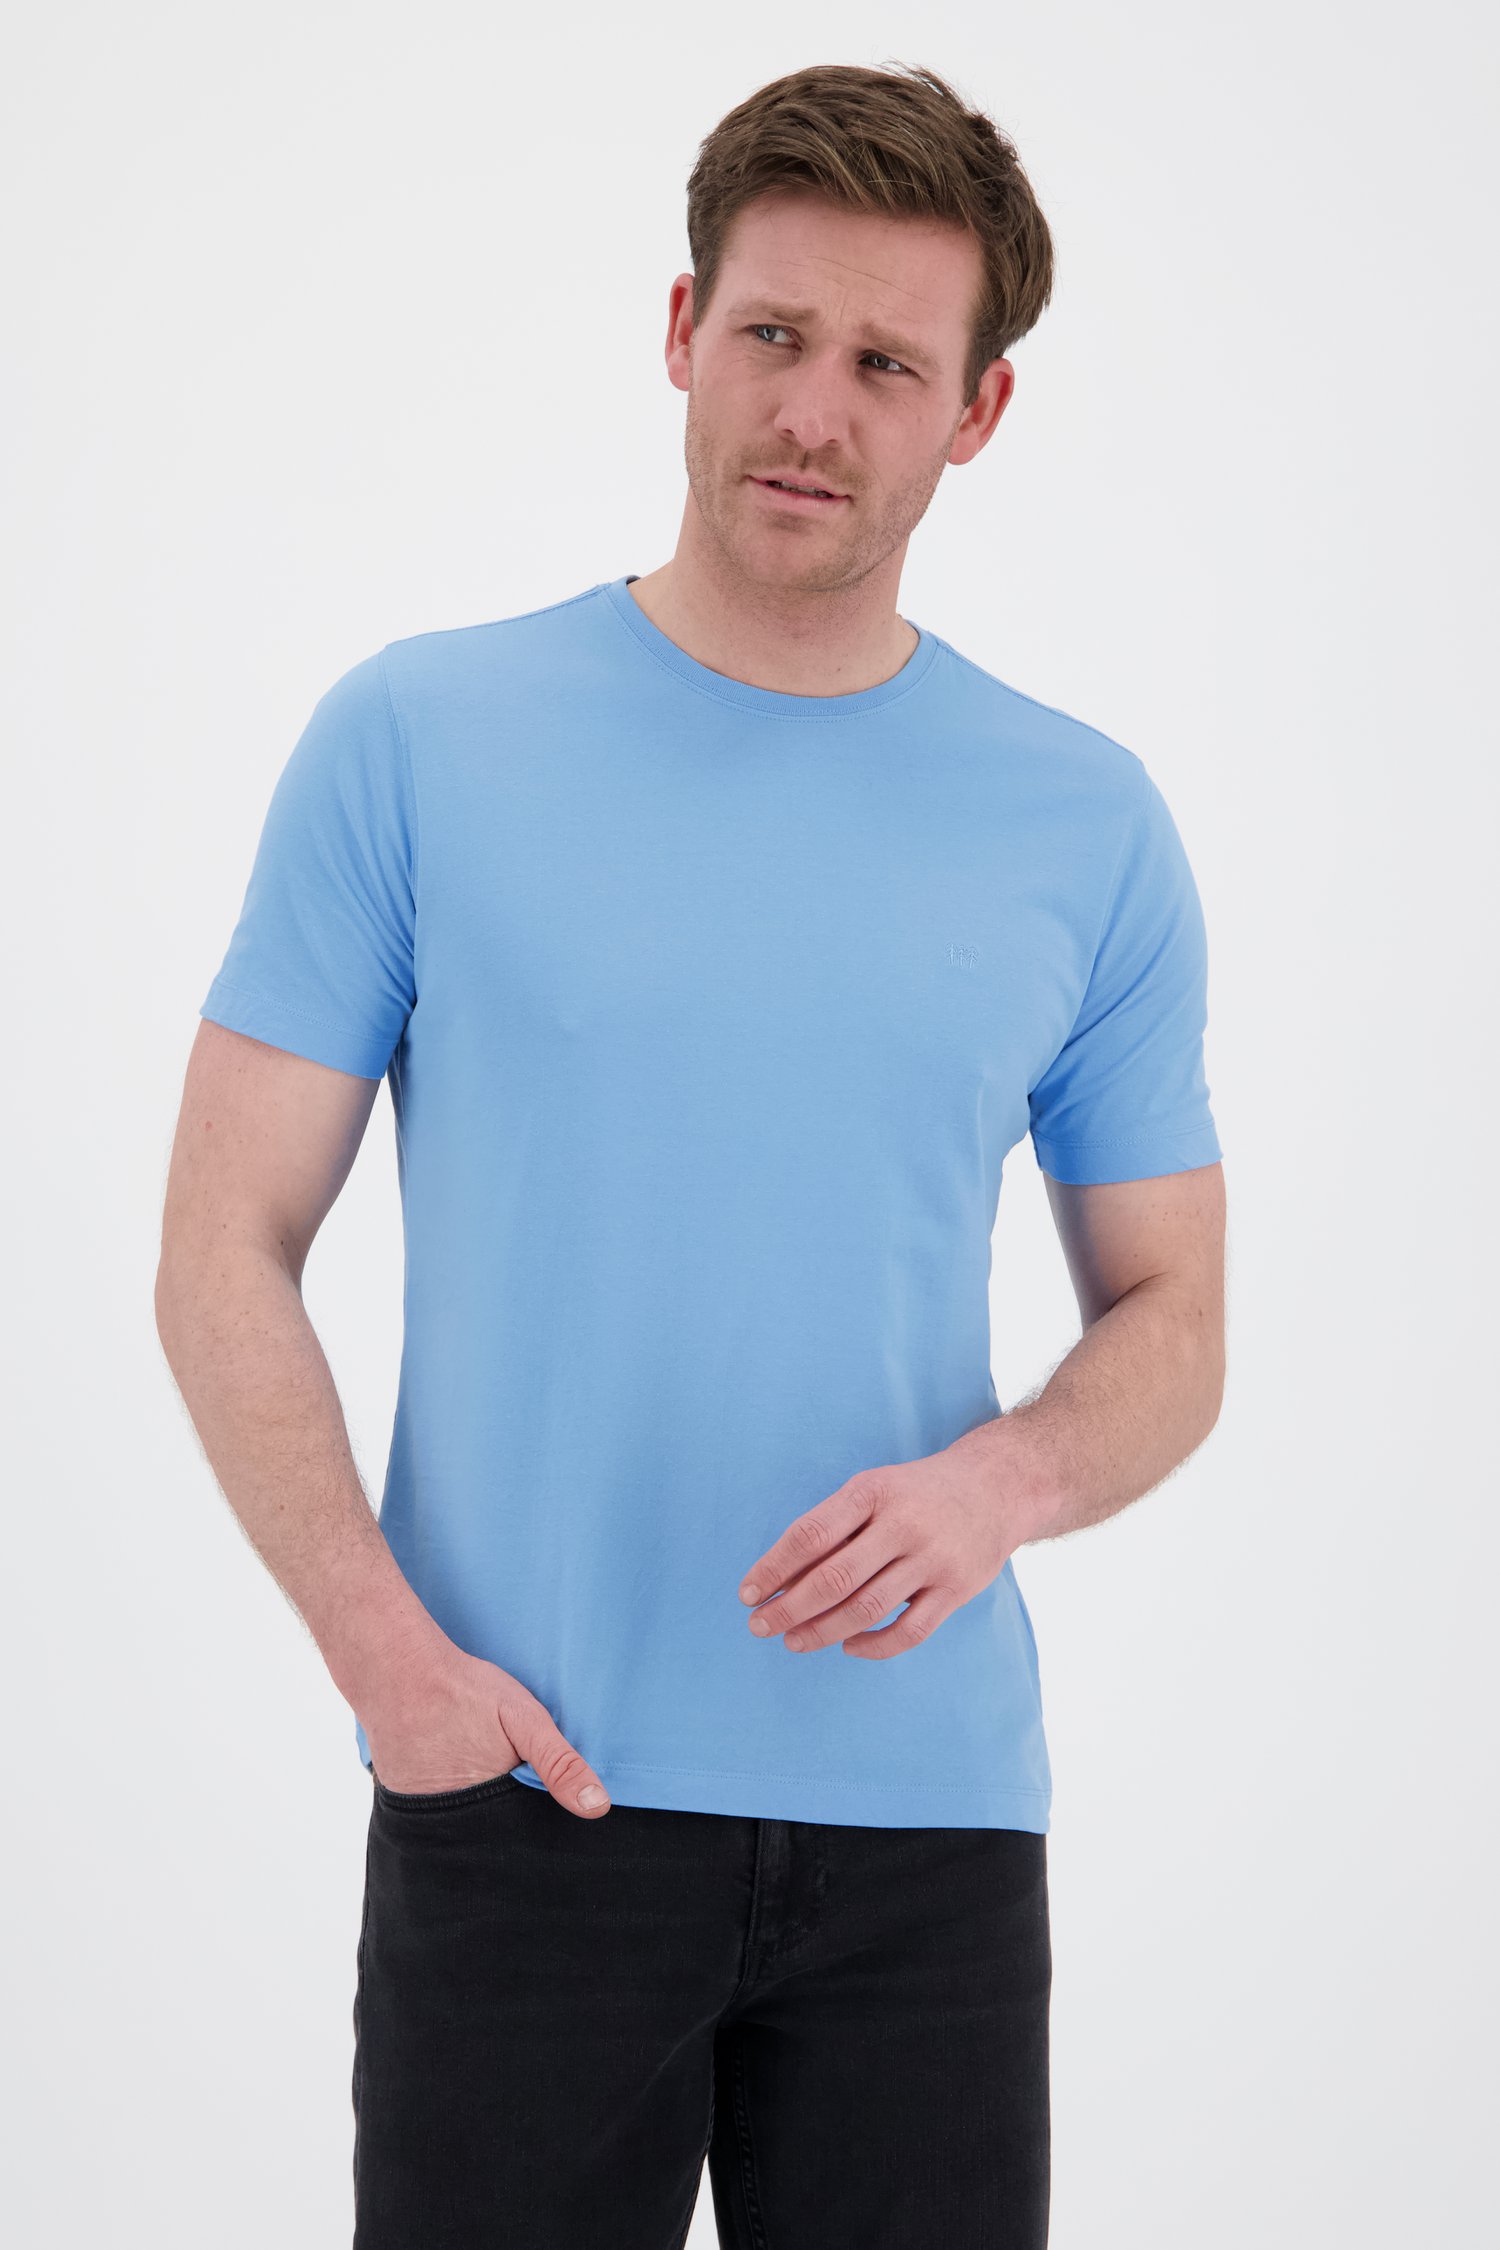 stap koud Afdeling Lichtblauw T-shirt met ronde hals van Ravøtt | 6855270 | e5